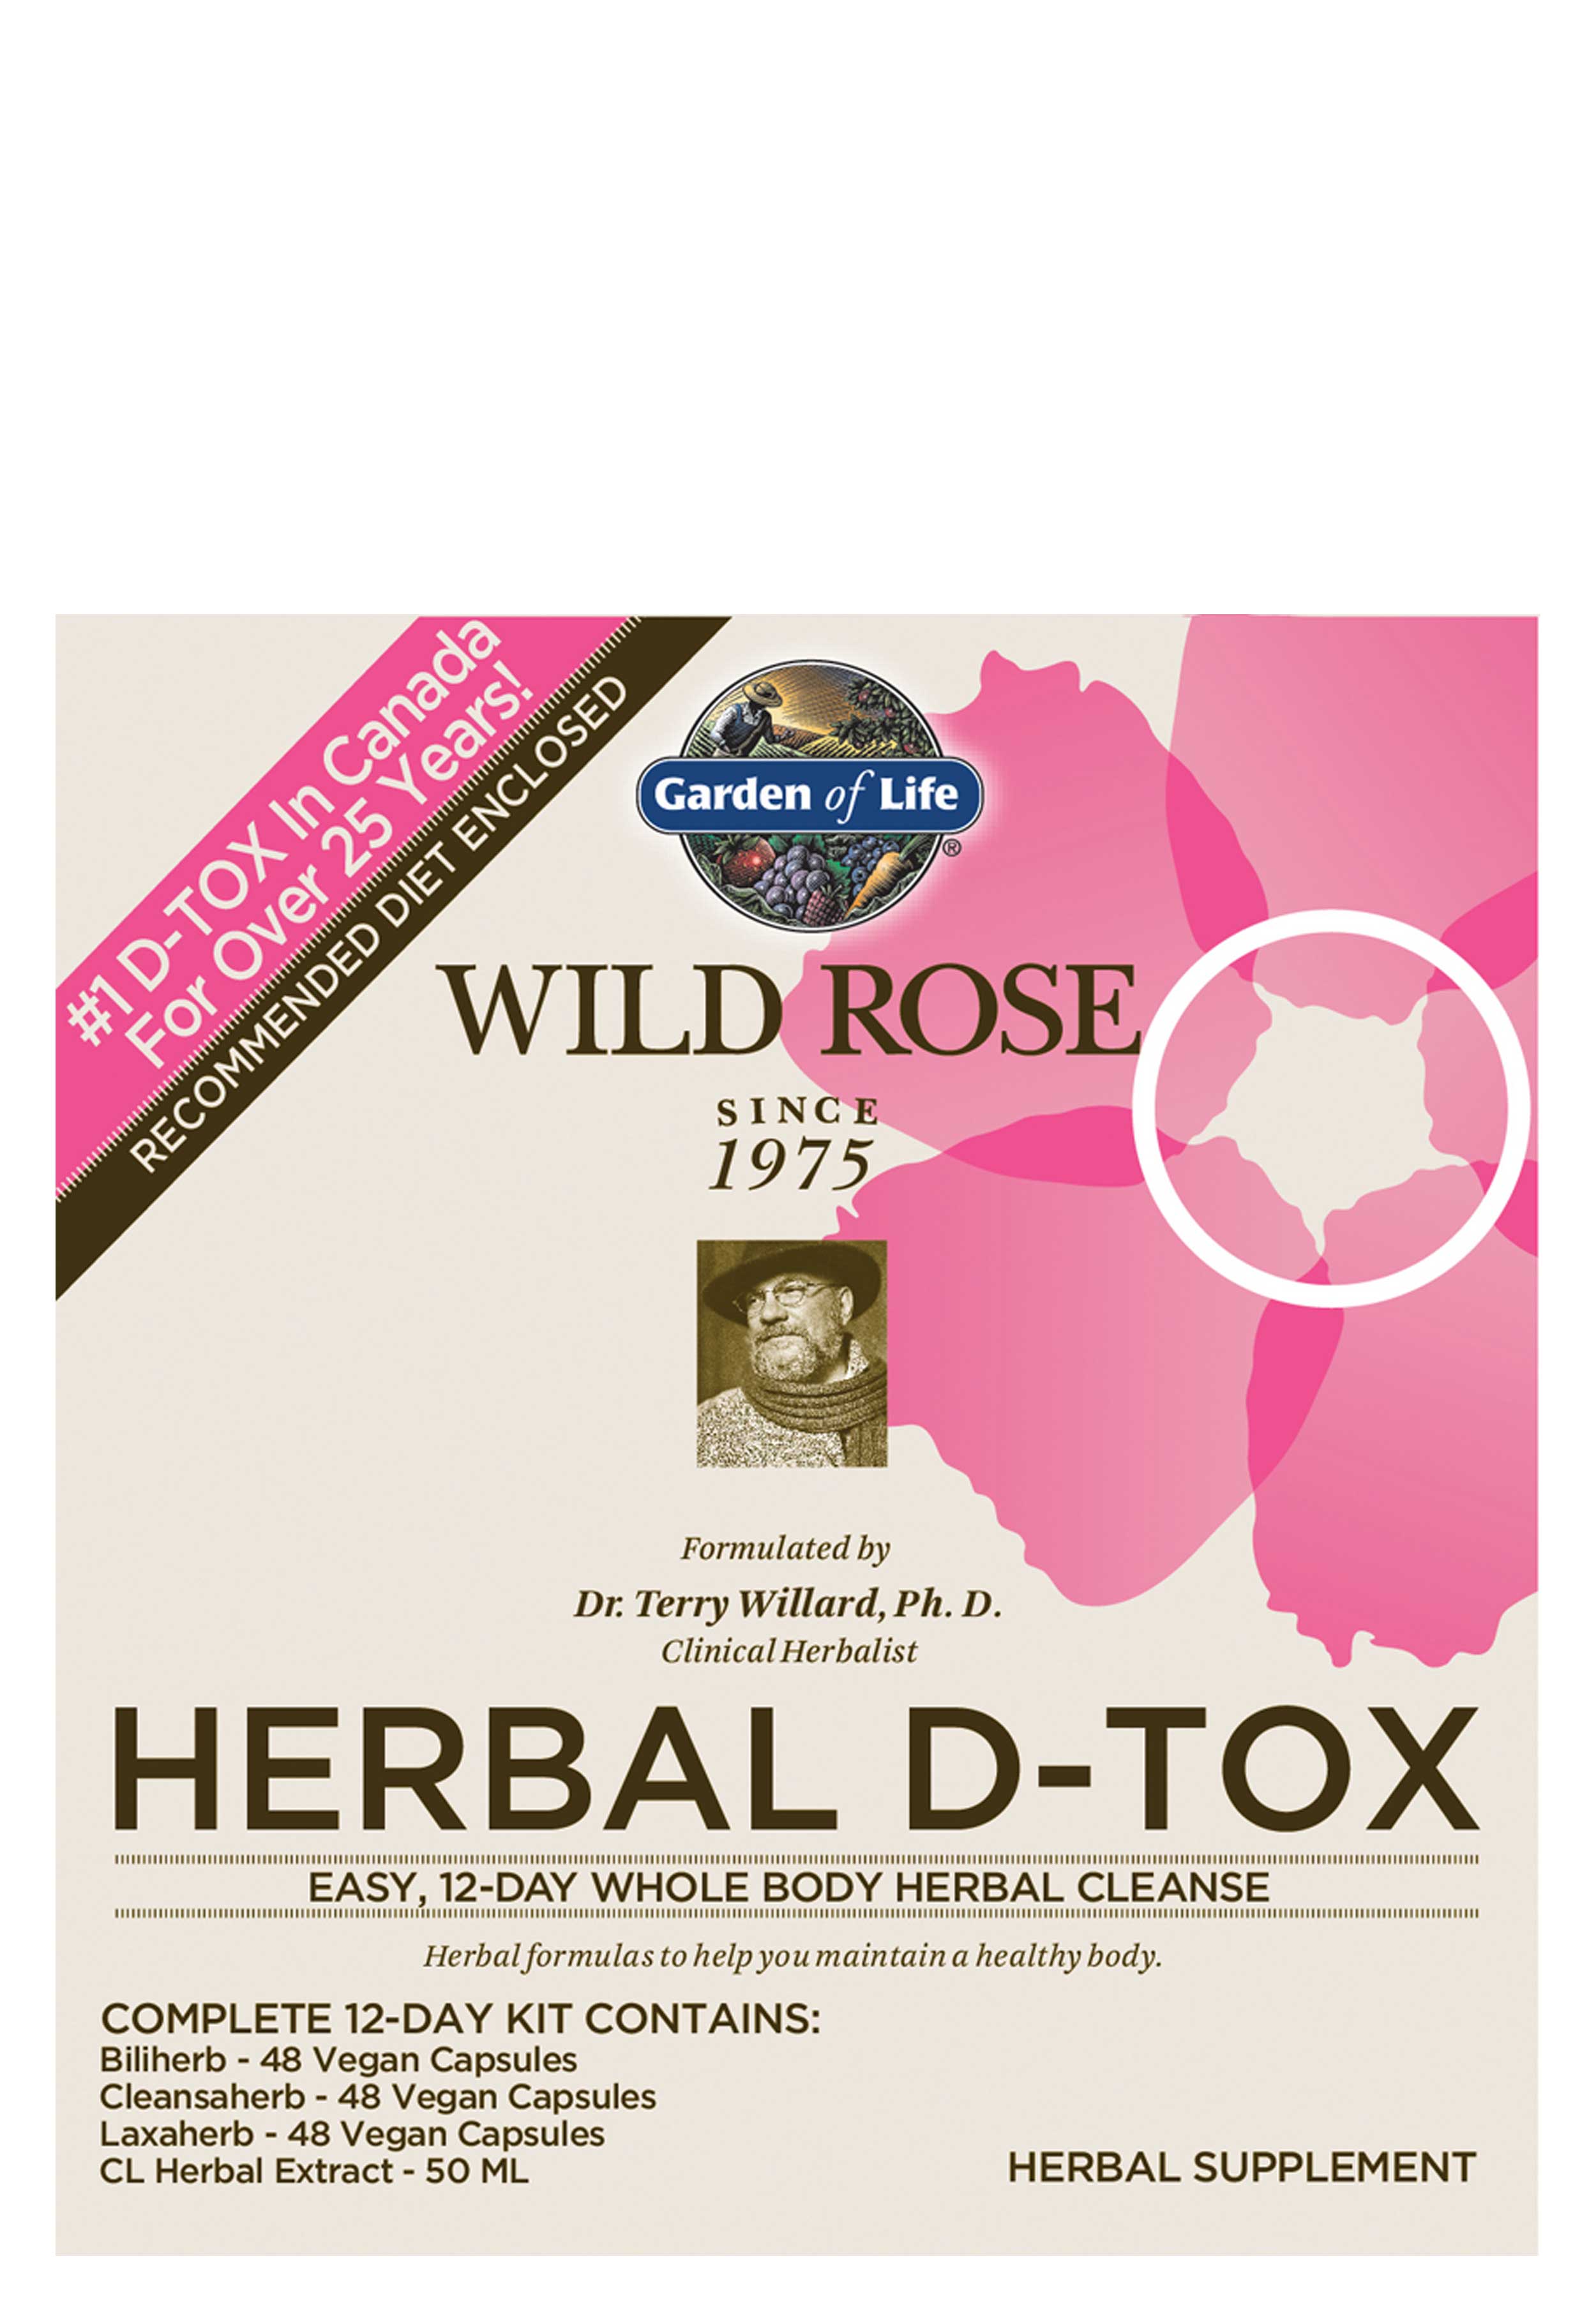 Garden of Life Wild Rose Herbal D-Tox